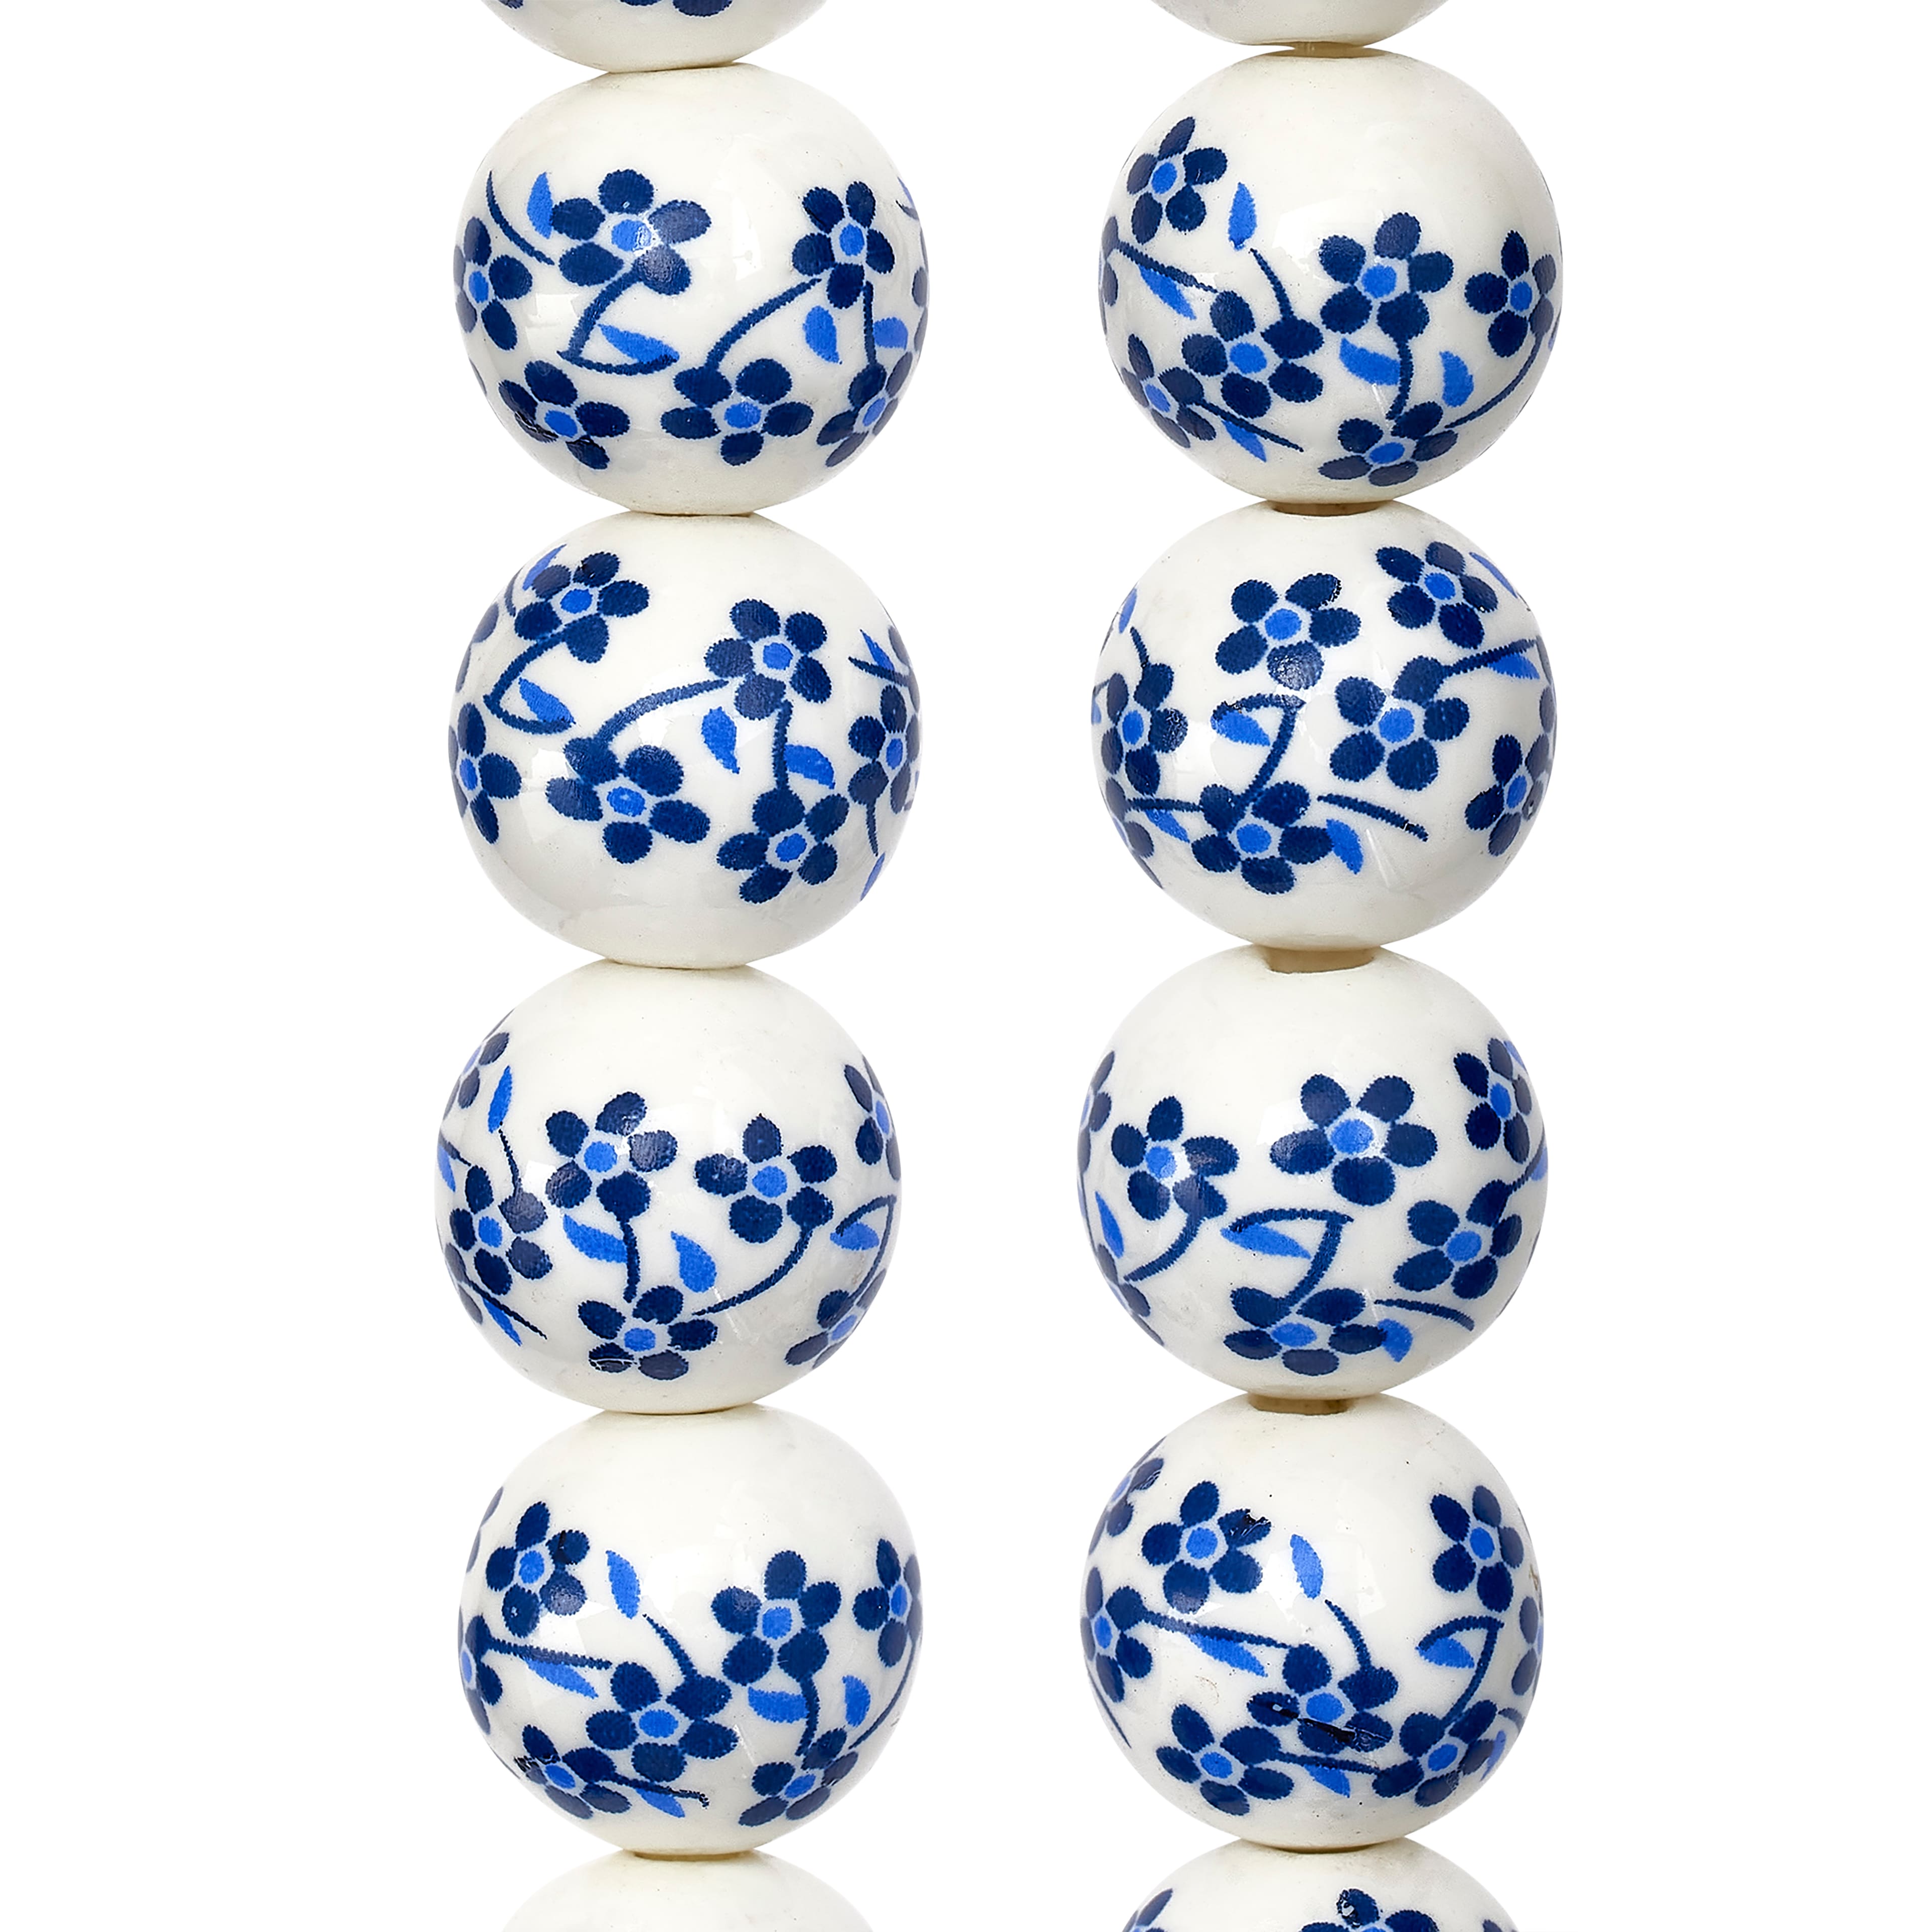 White &#x26; Sapphire Ceramic Round Beads, 12mm by Bead Landing&#x2122;